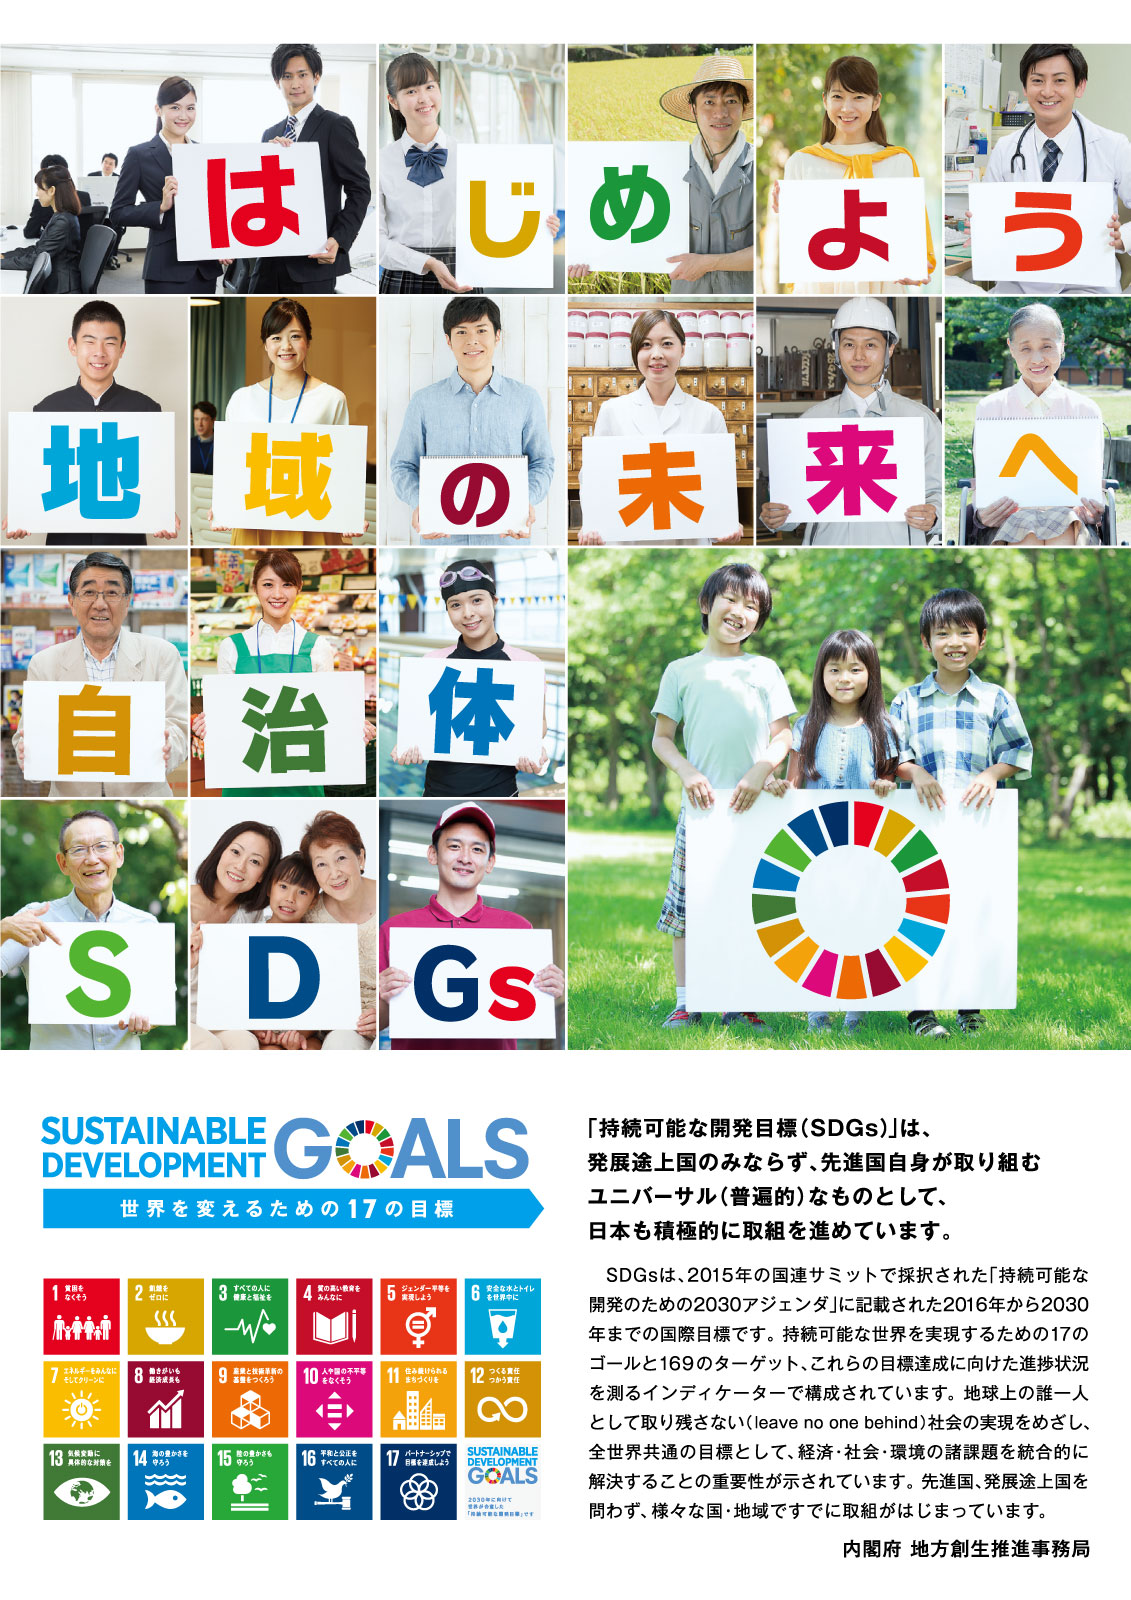 リーフレット『はじめよう地域の未来へ 自治体SDGs』